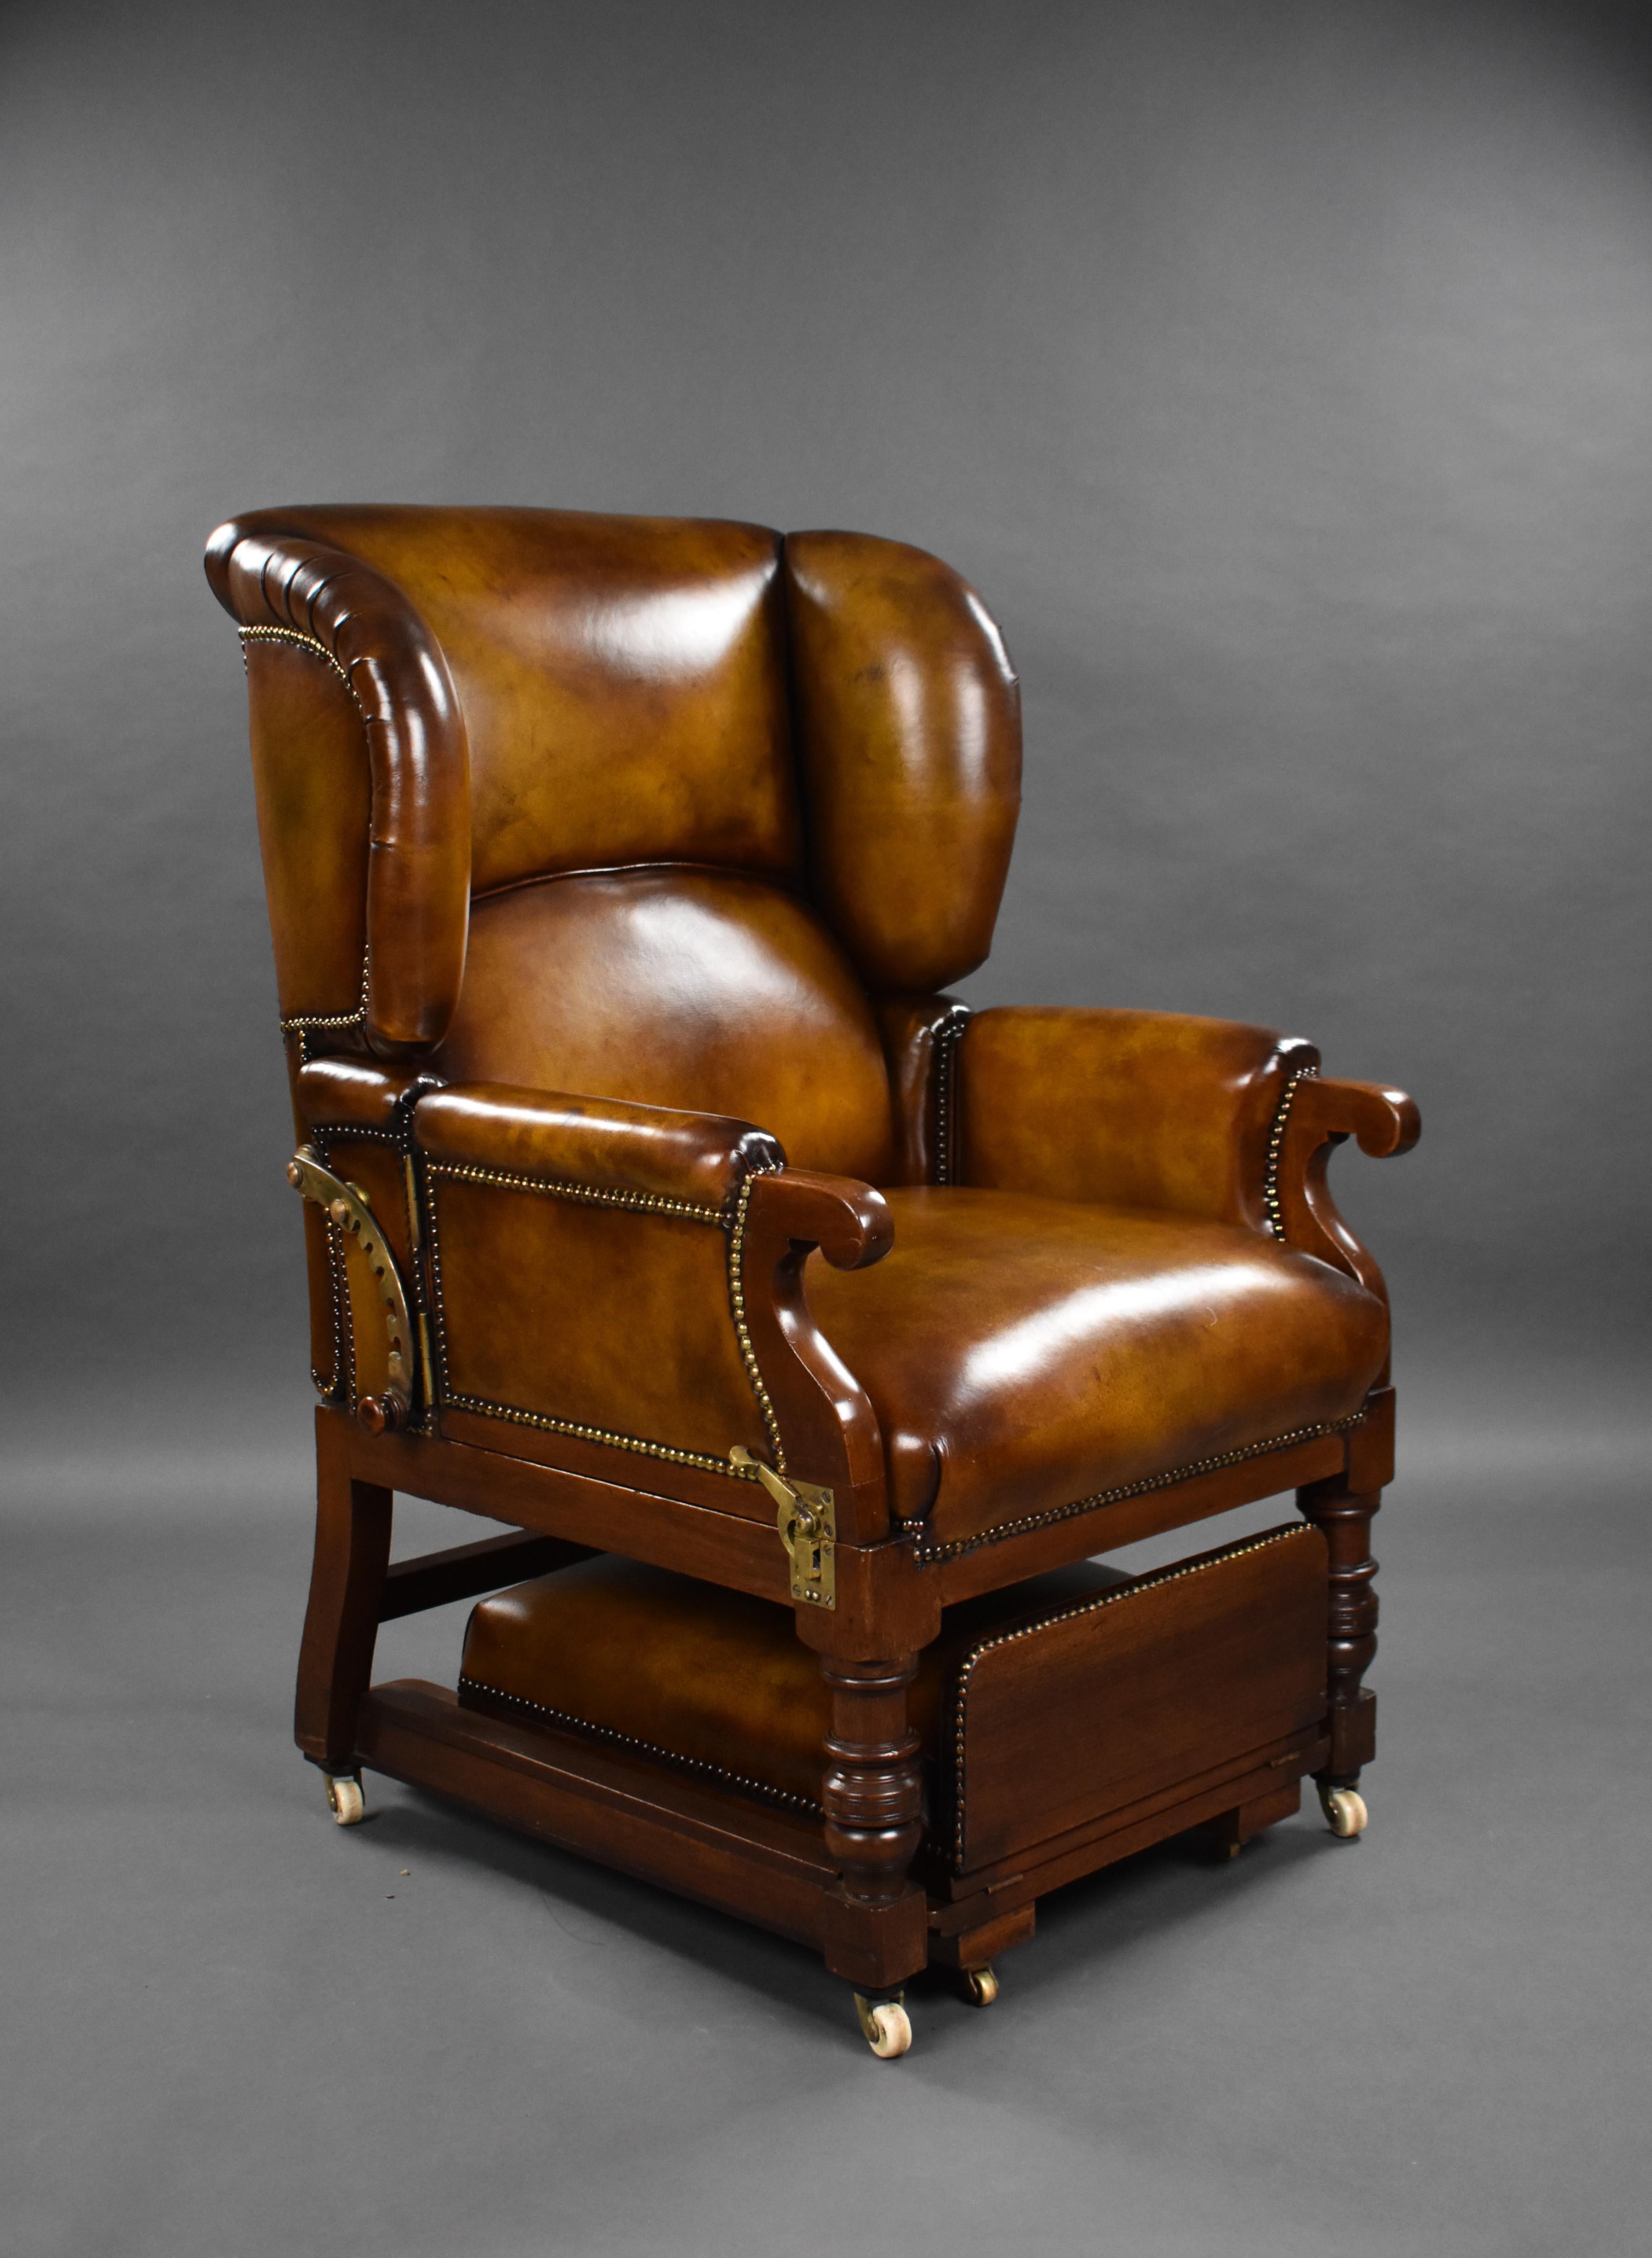 Ein viktorianischer Ledersessel von guter Qualität von Foots Patent Chairs. Mit einer verstellbaren Rückenlehne und zwei aufklappbaren Armlehnen über einem ausziehbaren, verstellbaren Hocker. Der Stuhl befindet sich in einem ausgezeichneten Zustand